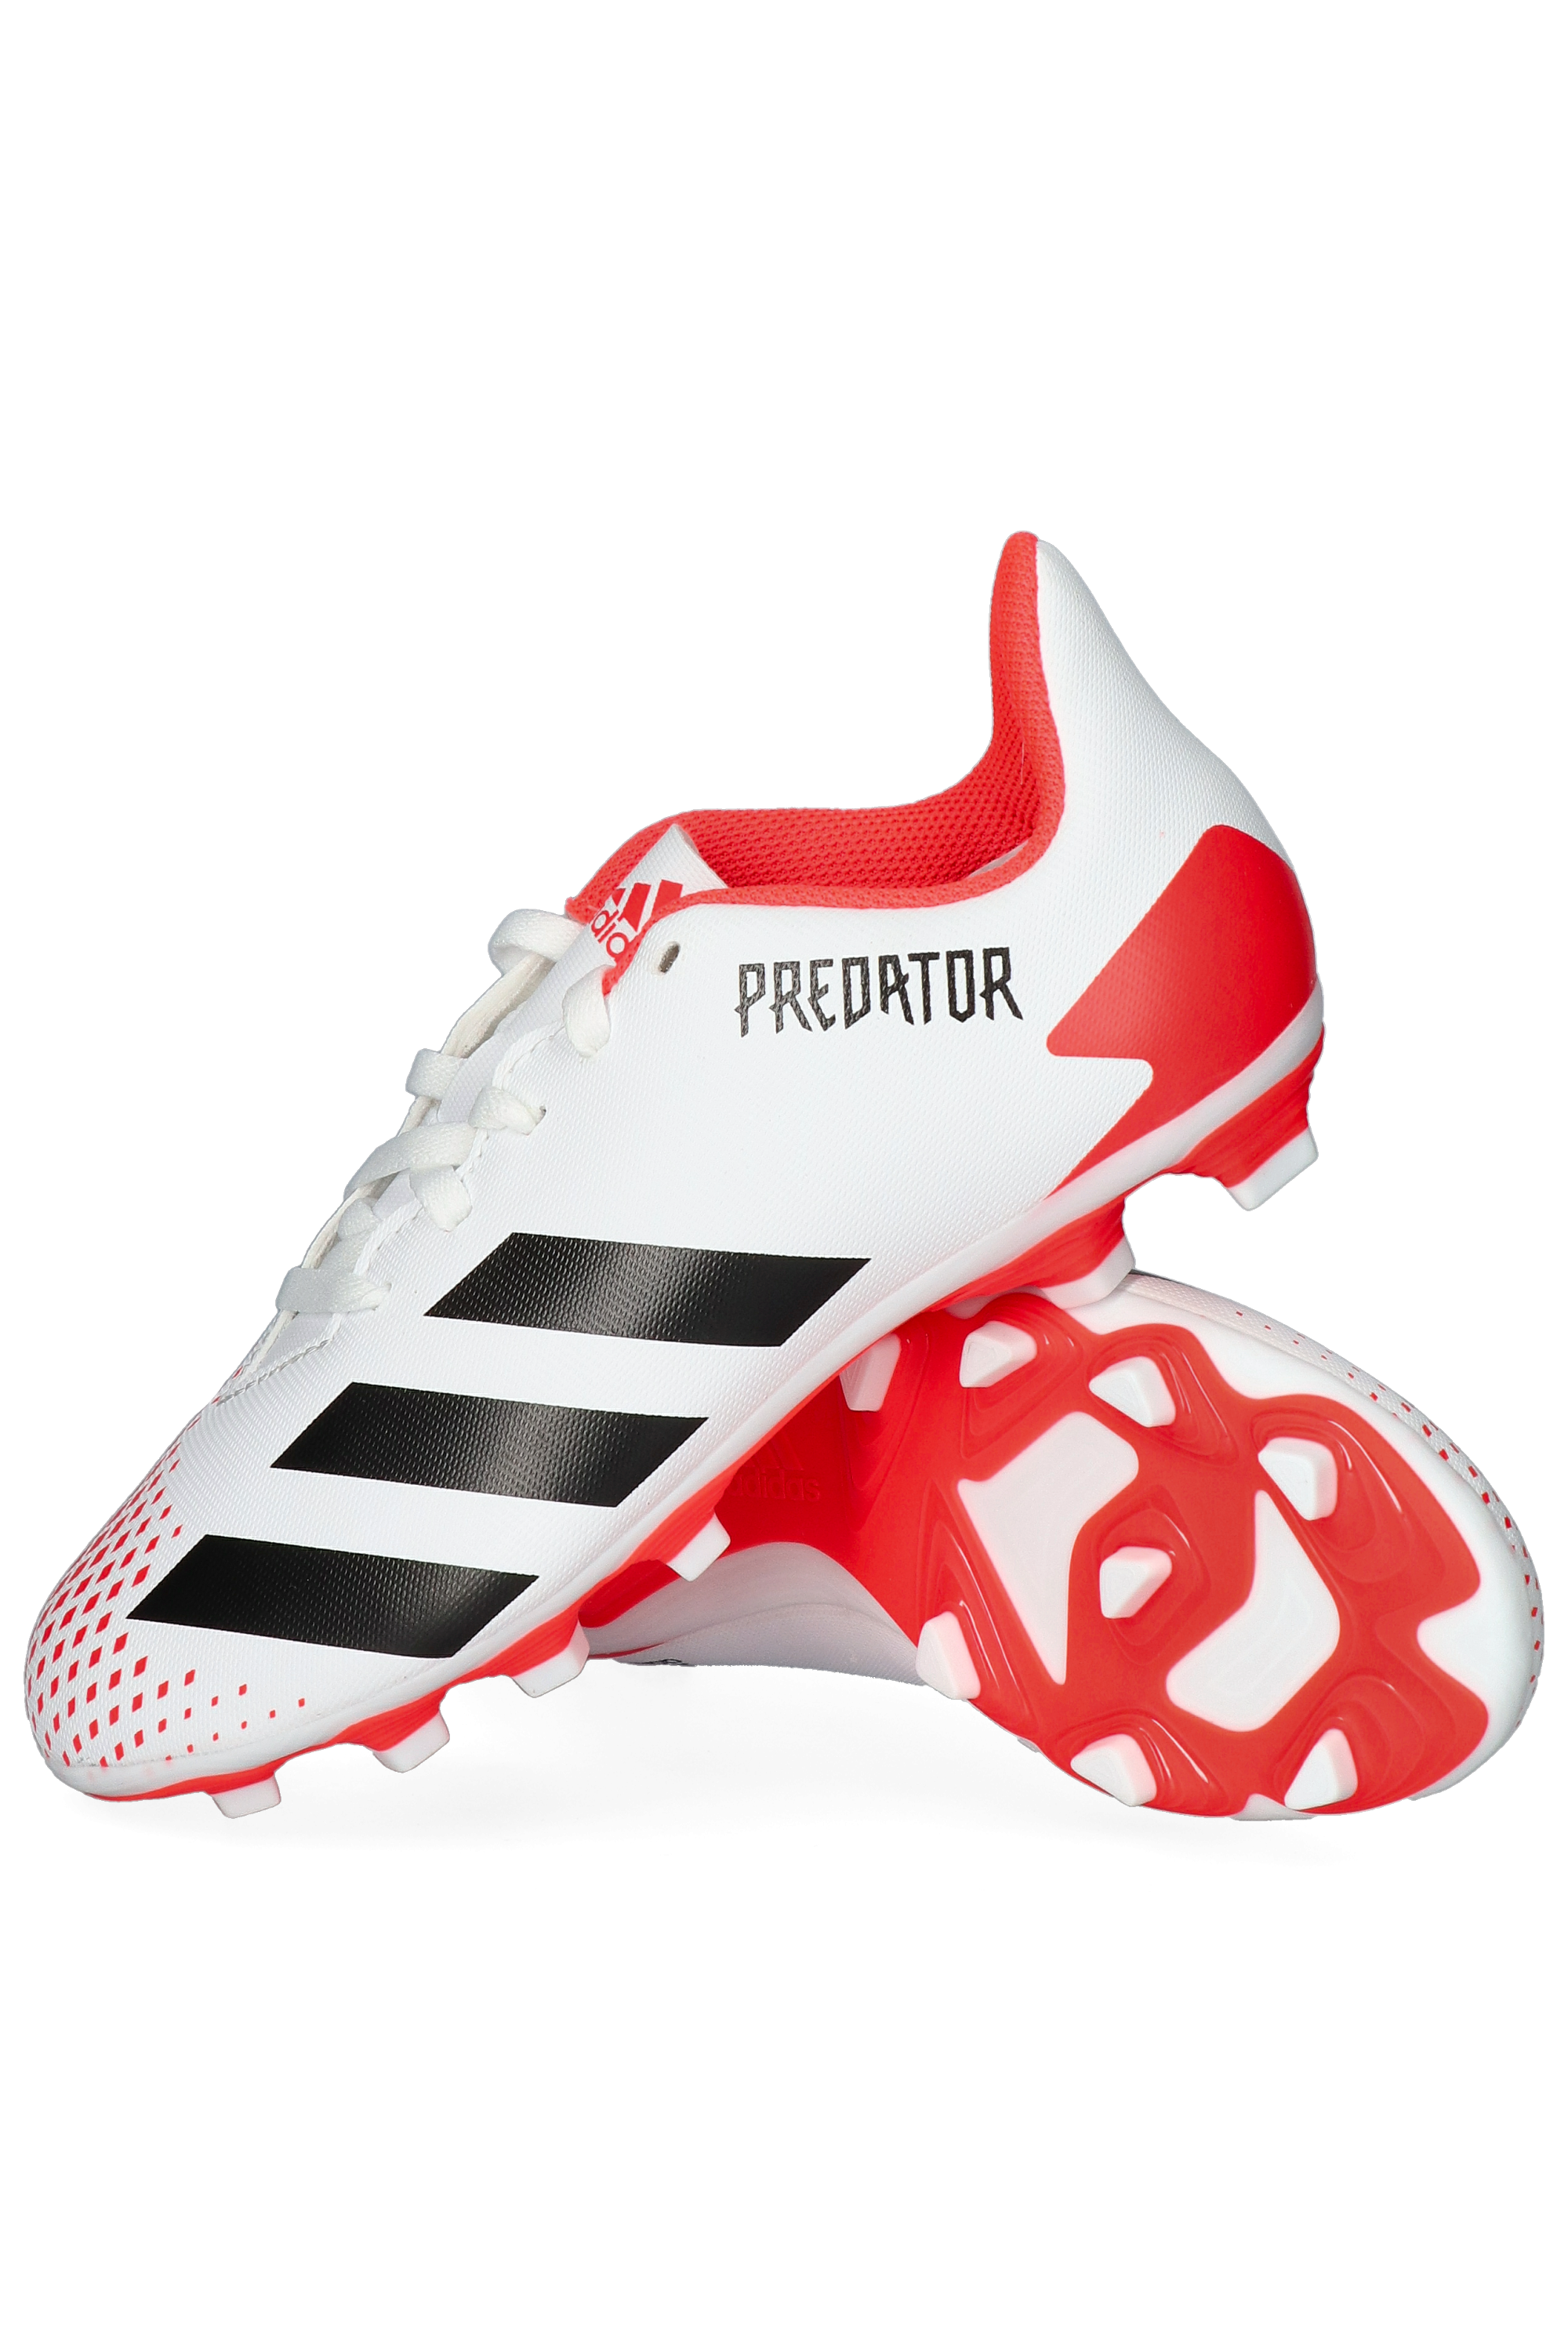 predator 20.4 fxg adidas